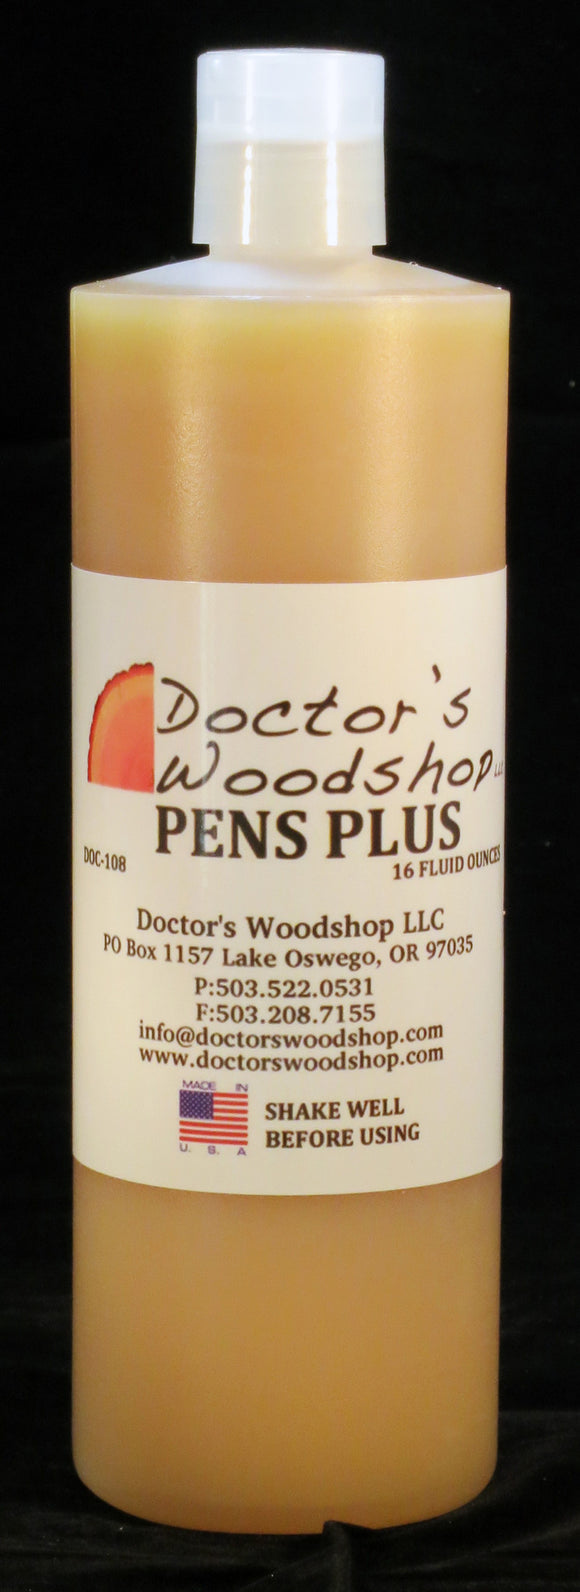 Doctor's Woodshop Pens Plus Doc - 108